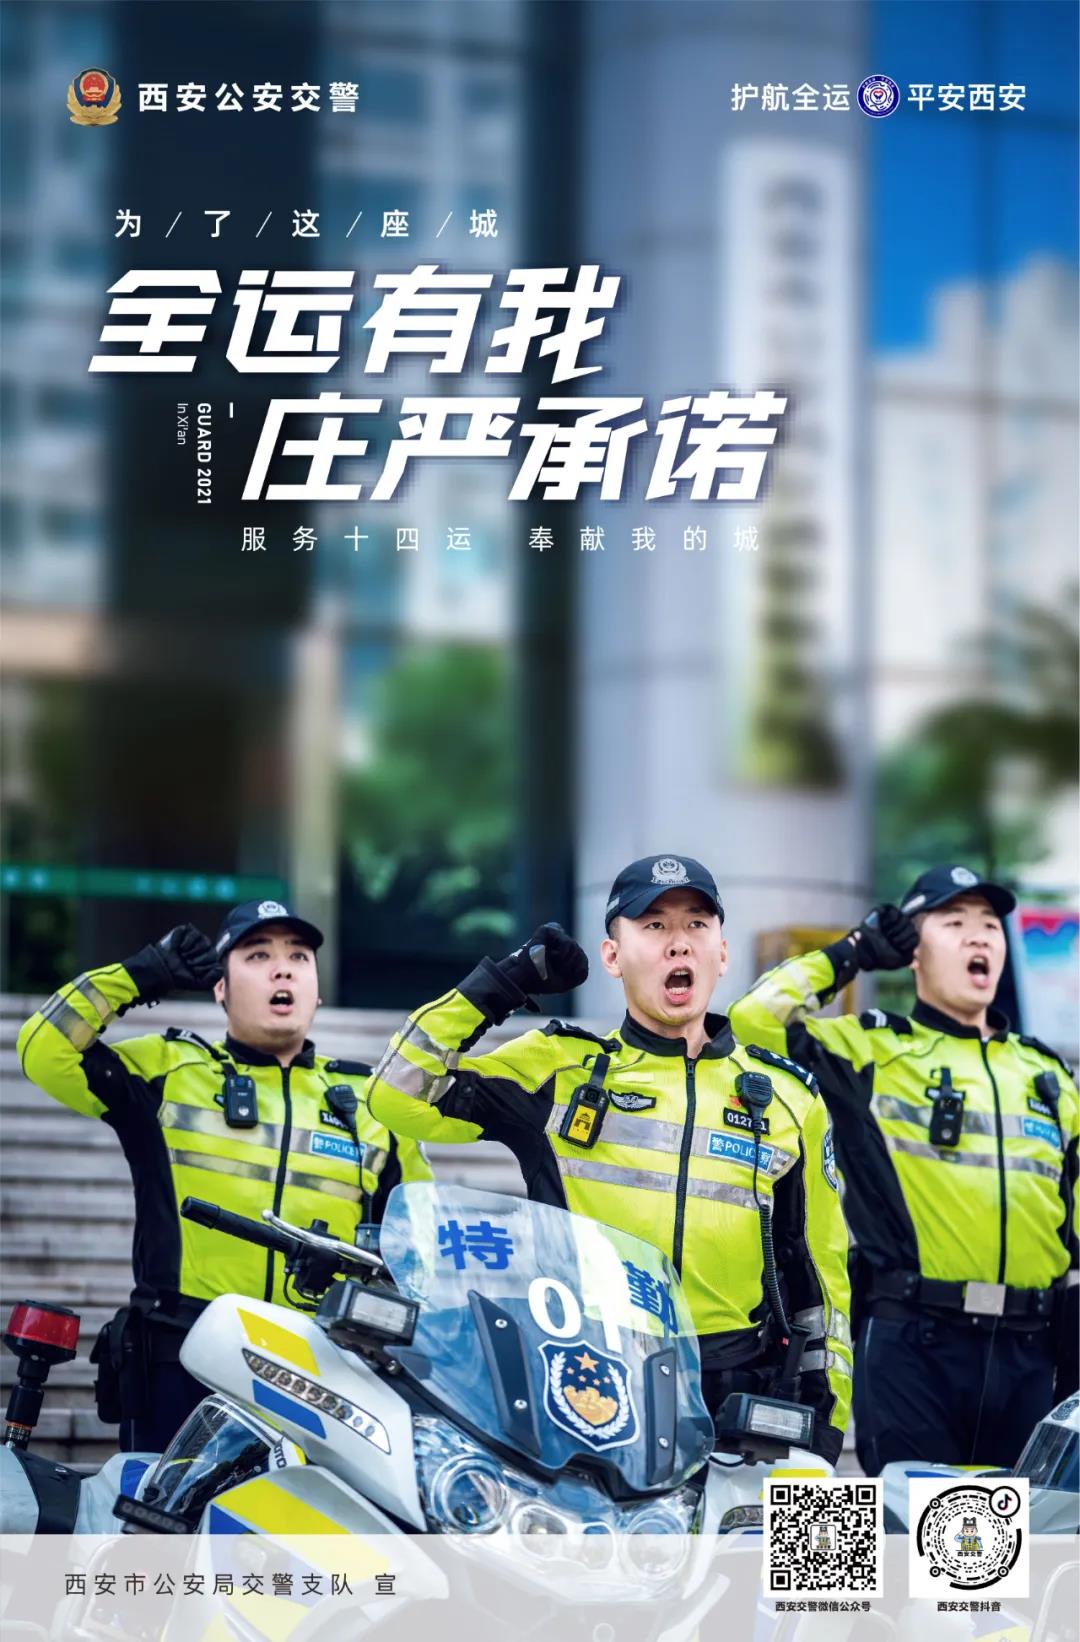 为了这座城丨西安交警十四运炫酷宣传海报来啦！